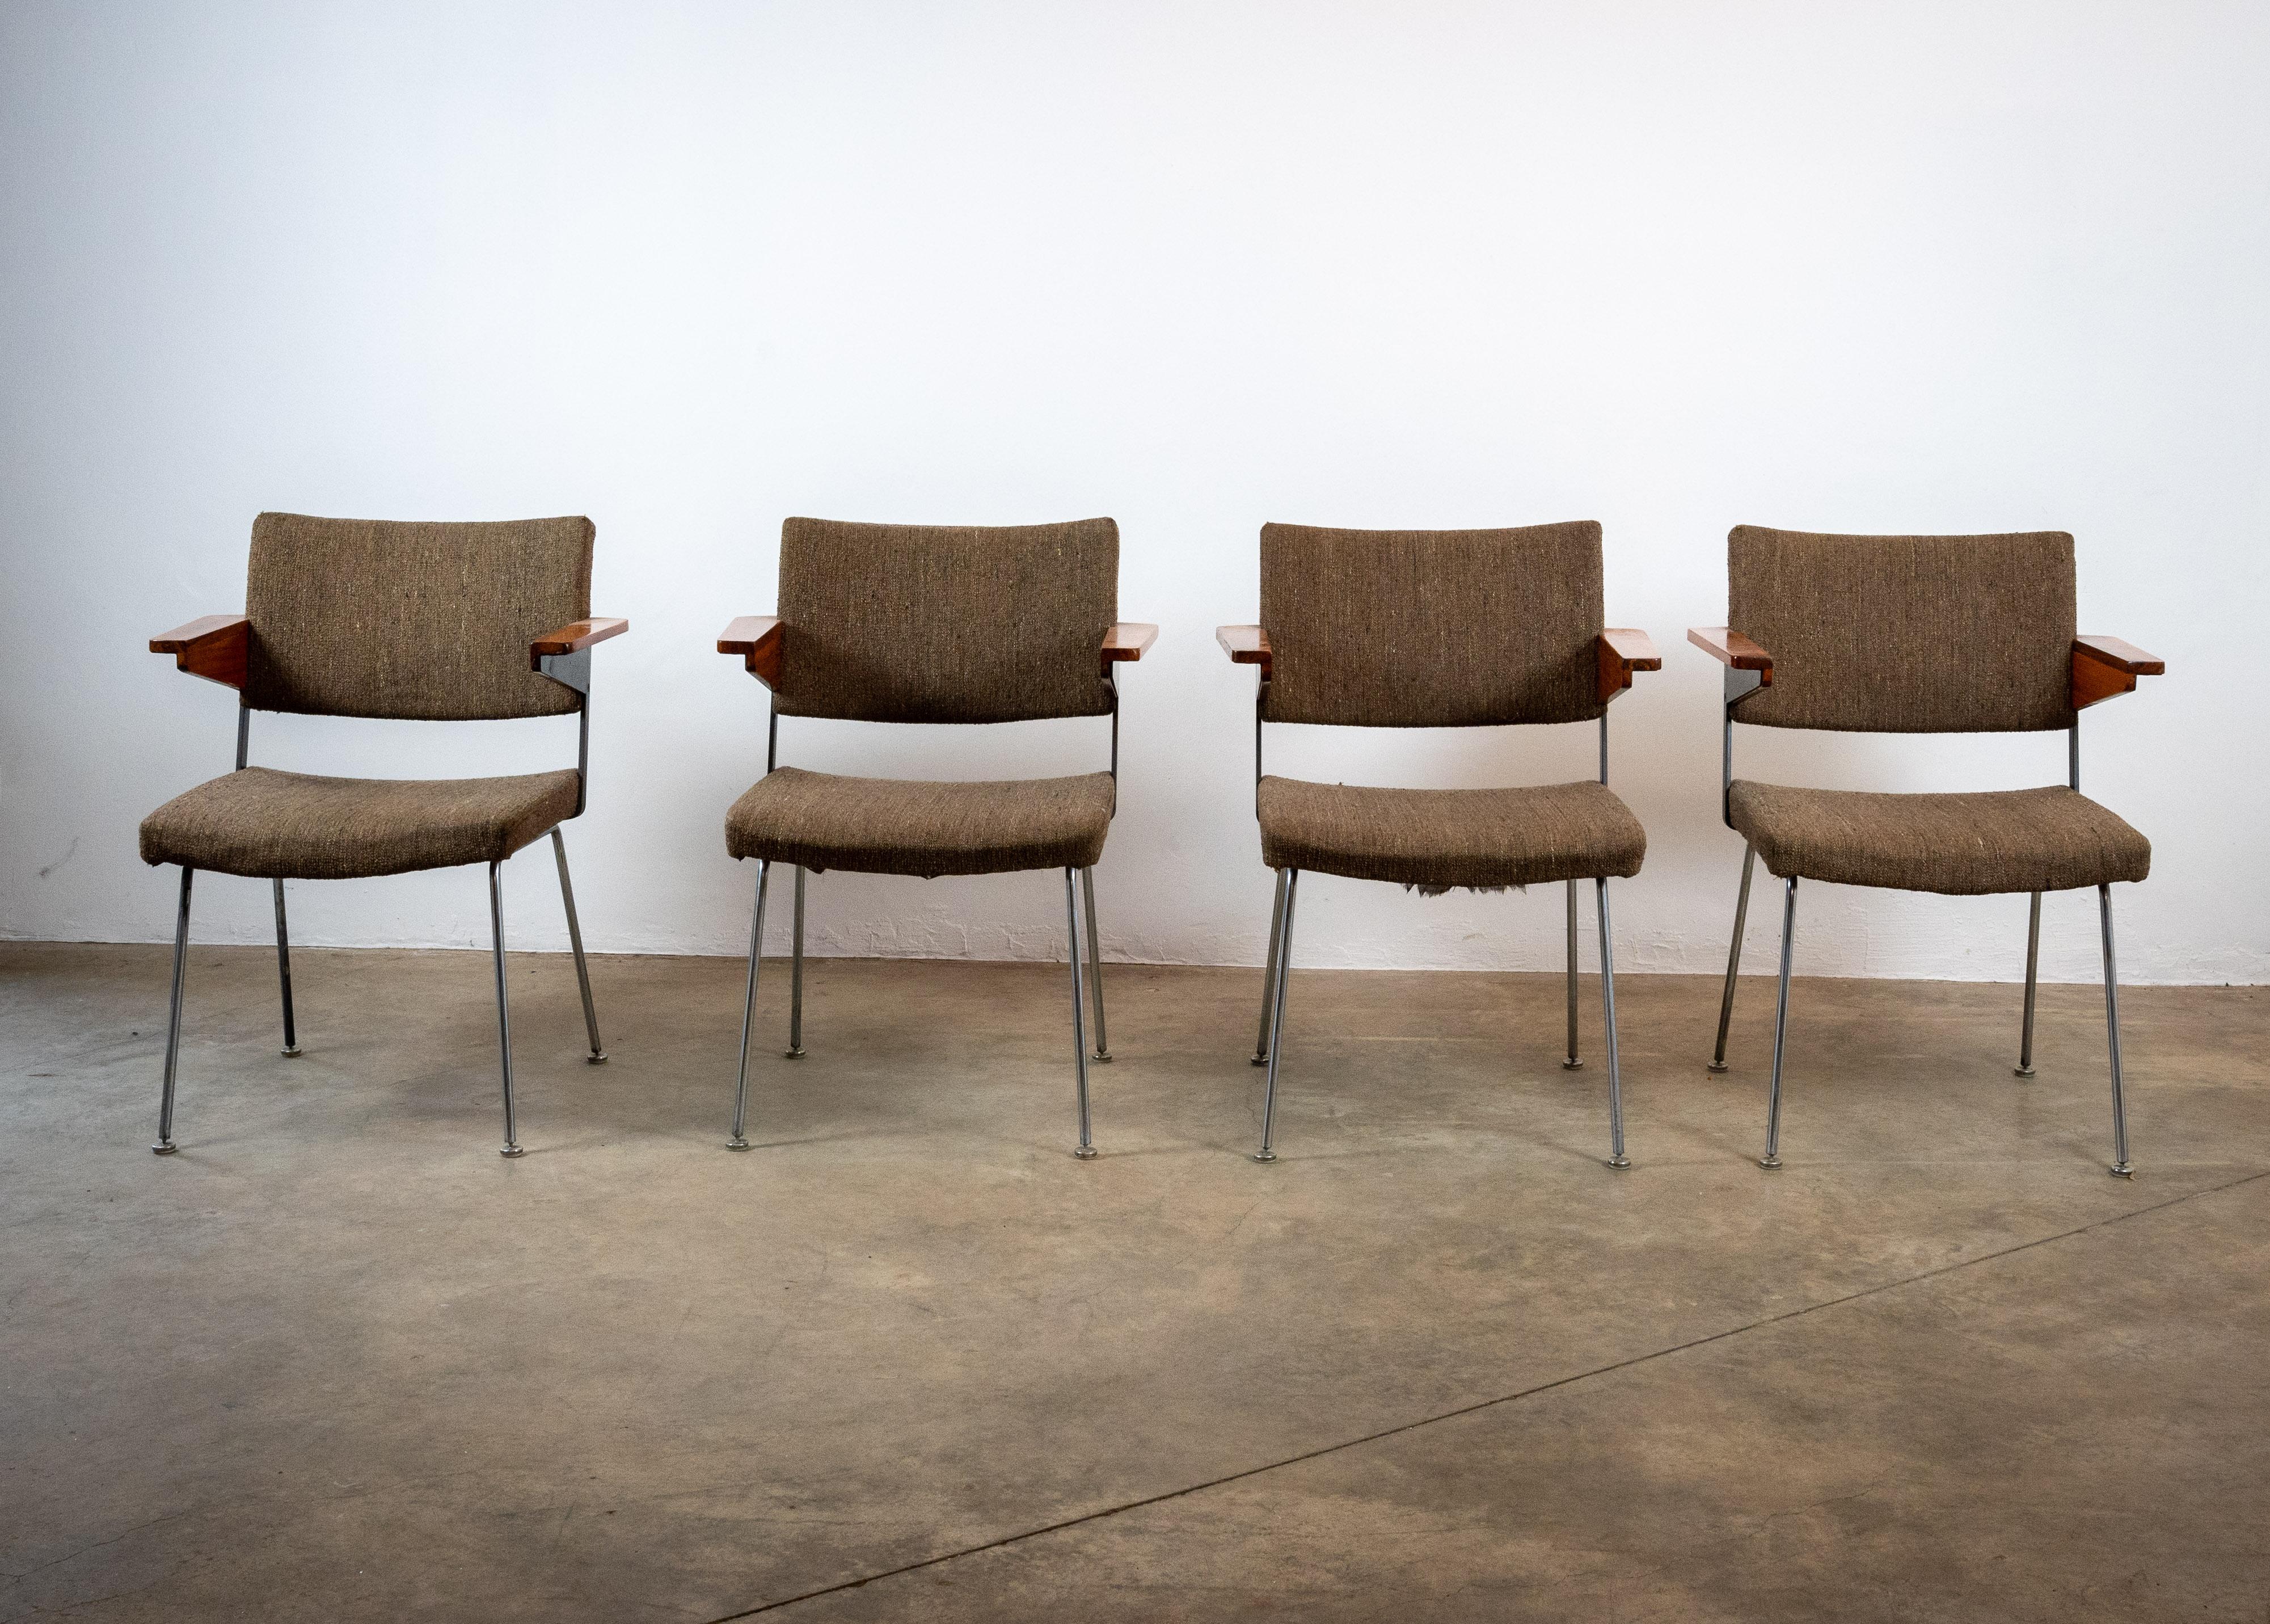 Wir präsentieren einen Satz von 8 exquisiten Gispen No.11 Stühlen, die als 4er oder 8er Set erhältlich sind. Diese Wunderwerke aus der Mitte des Jahrhunderts, entworfen von A.R. Cordemeyer, strahlen zeitlose Eleganz aus. Die Armlehnen aus Holz